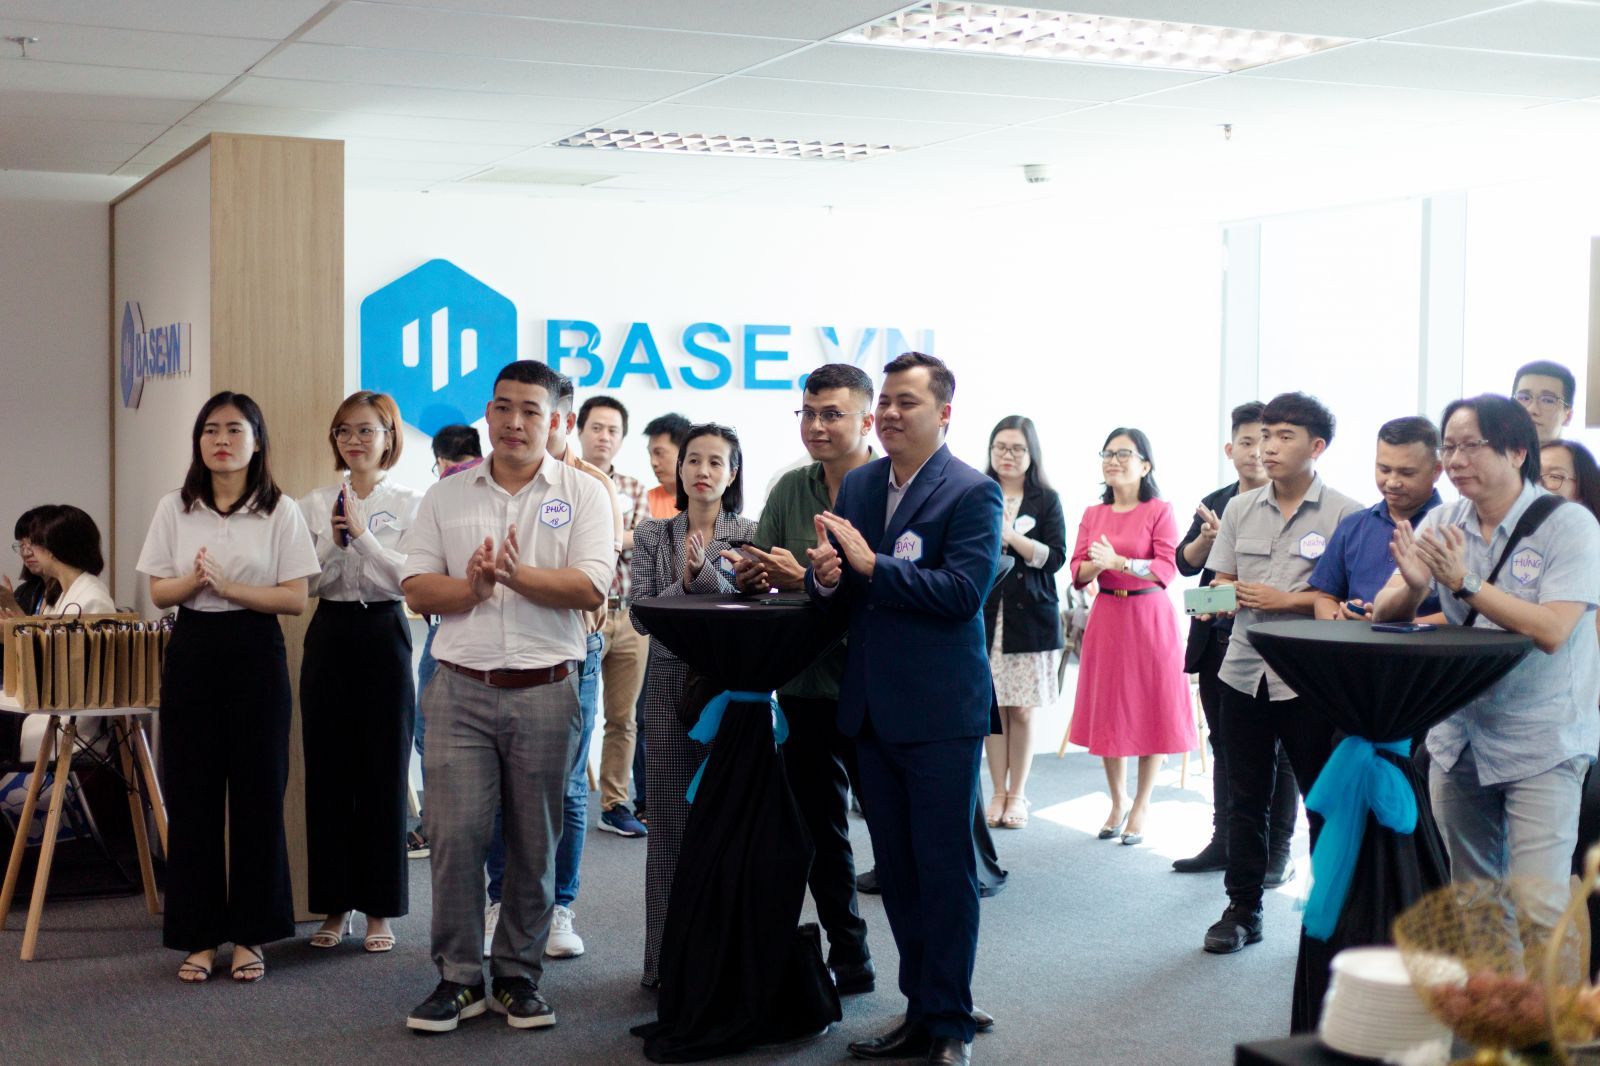 Base.vn gặp gỡ doanh nghiệp trong sự kiện khai trương Văn phòng đại diện tại Đà Nẵng